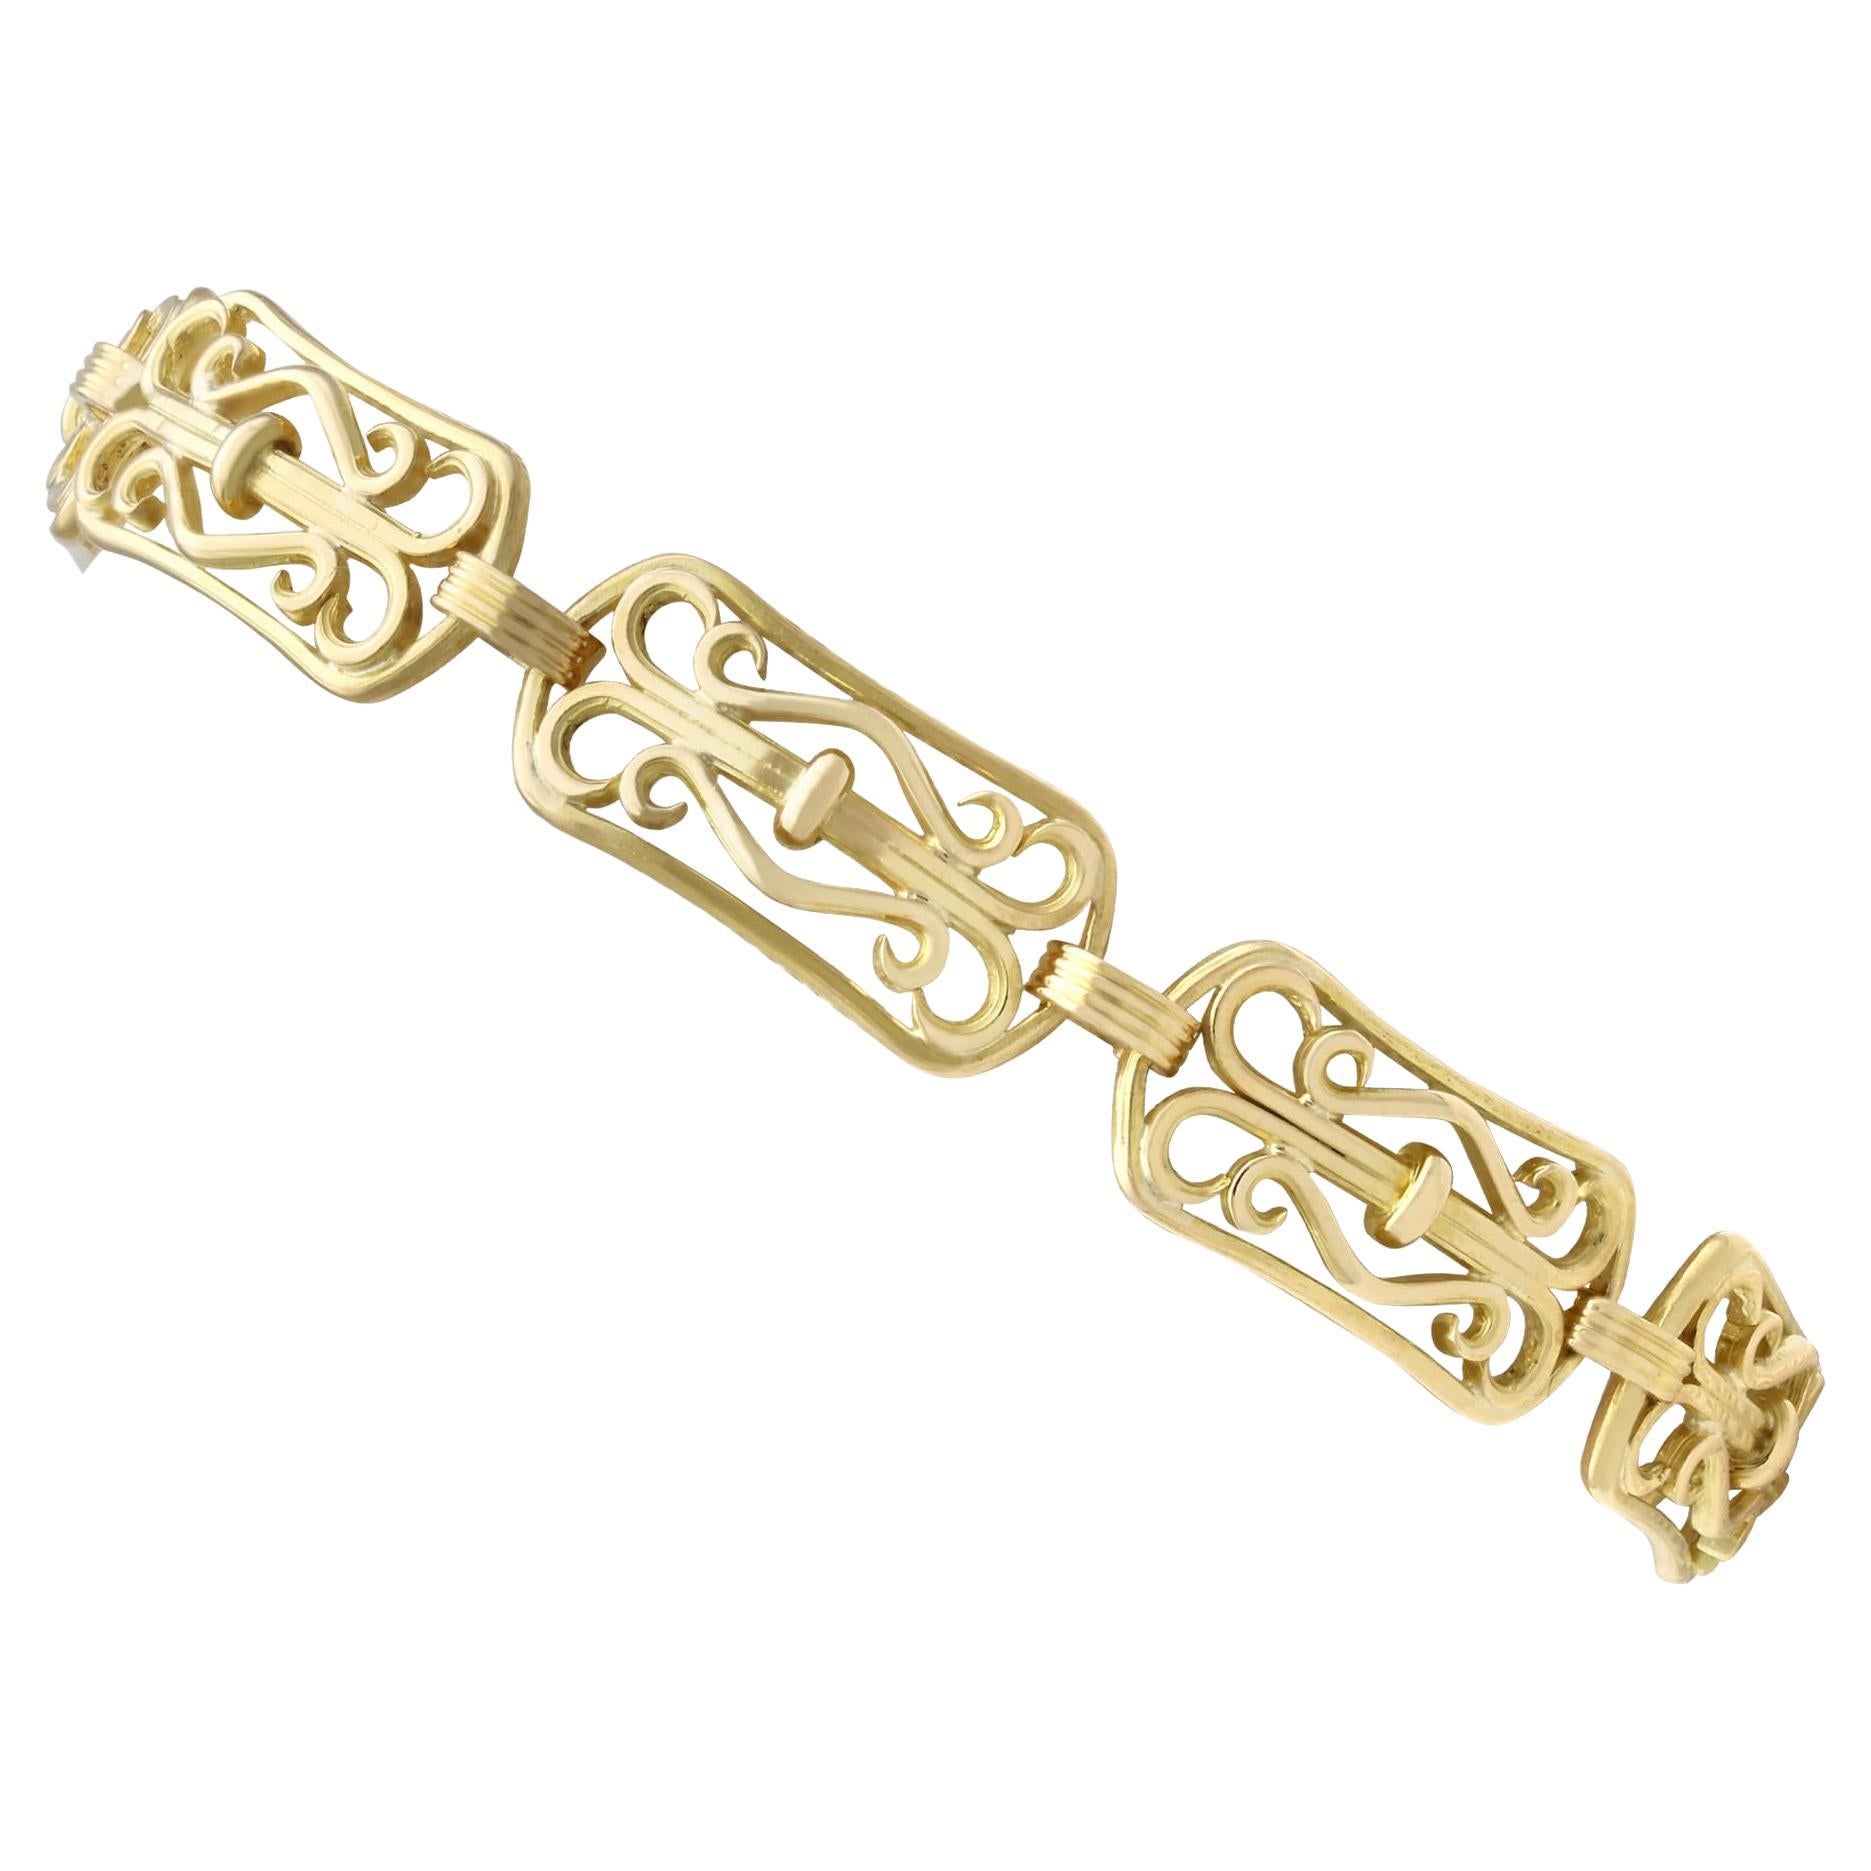 Antique French Art Nouveau 18k Yellow Gold Bracelet For Sale